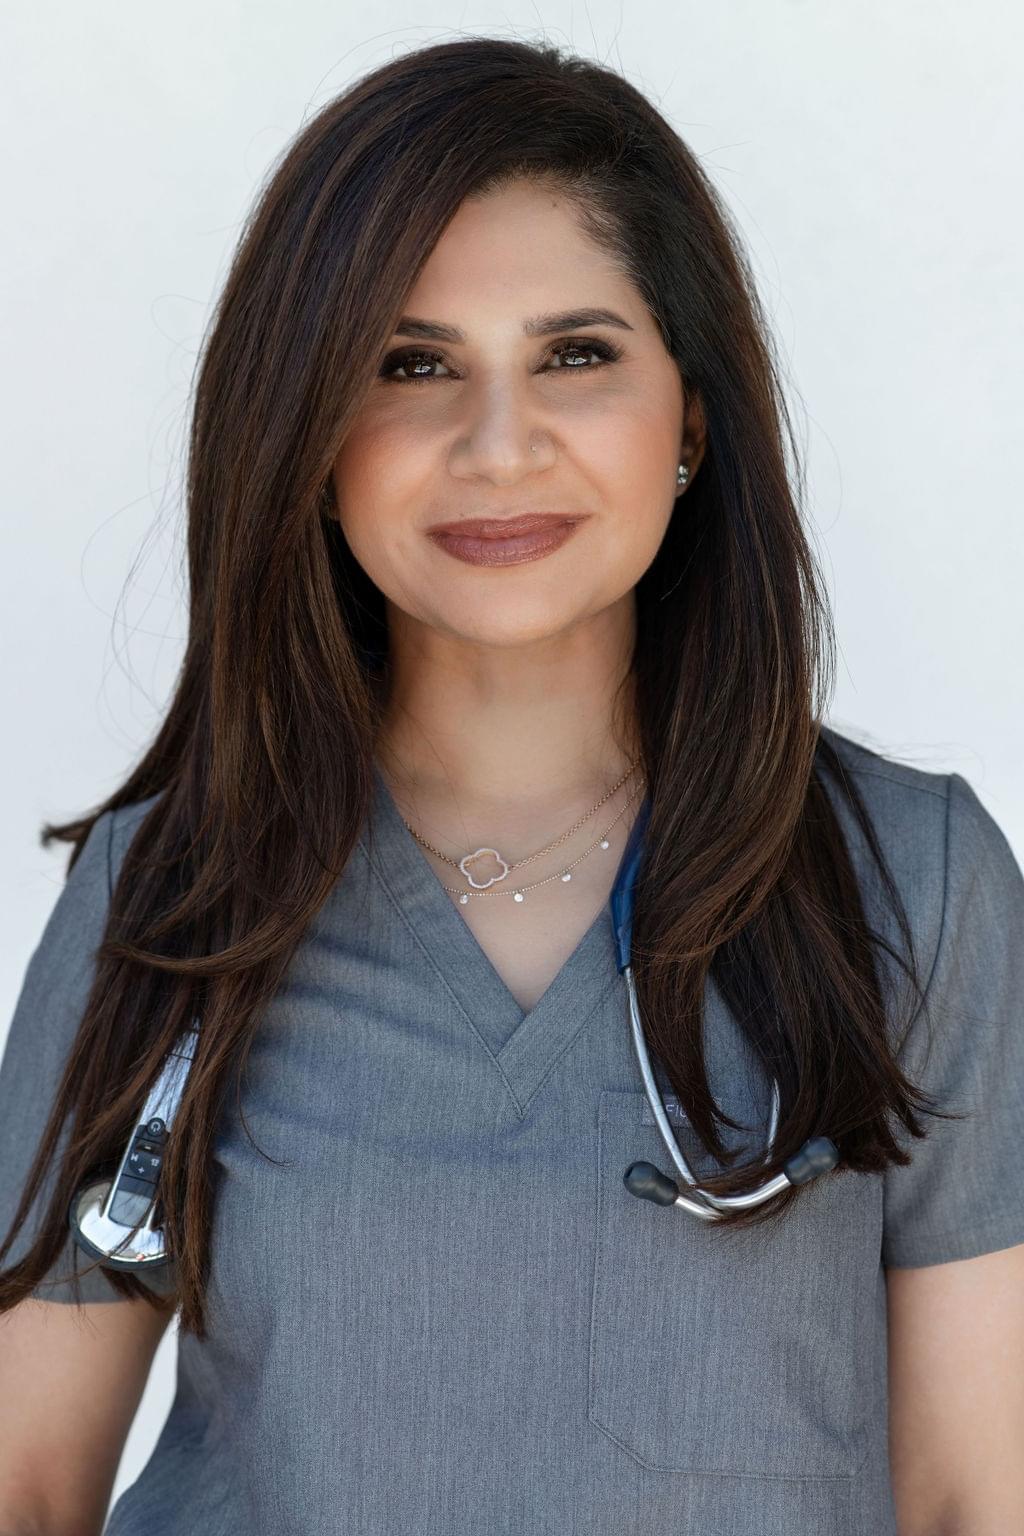 Dr Nashat Reimagined Health